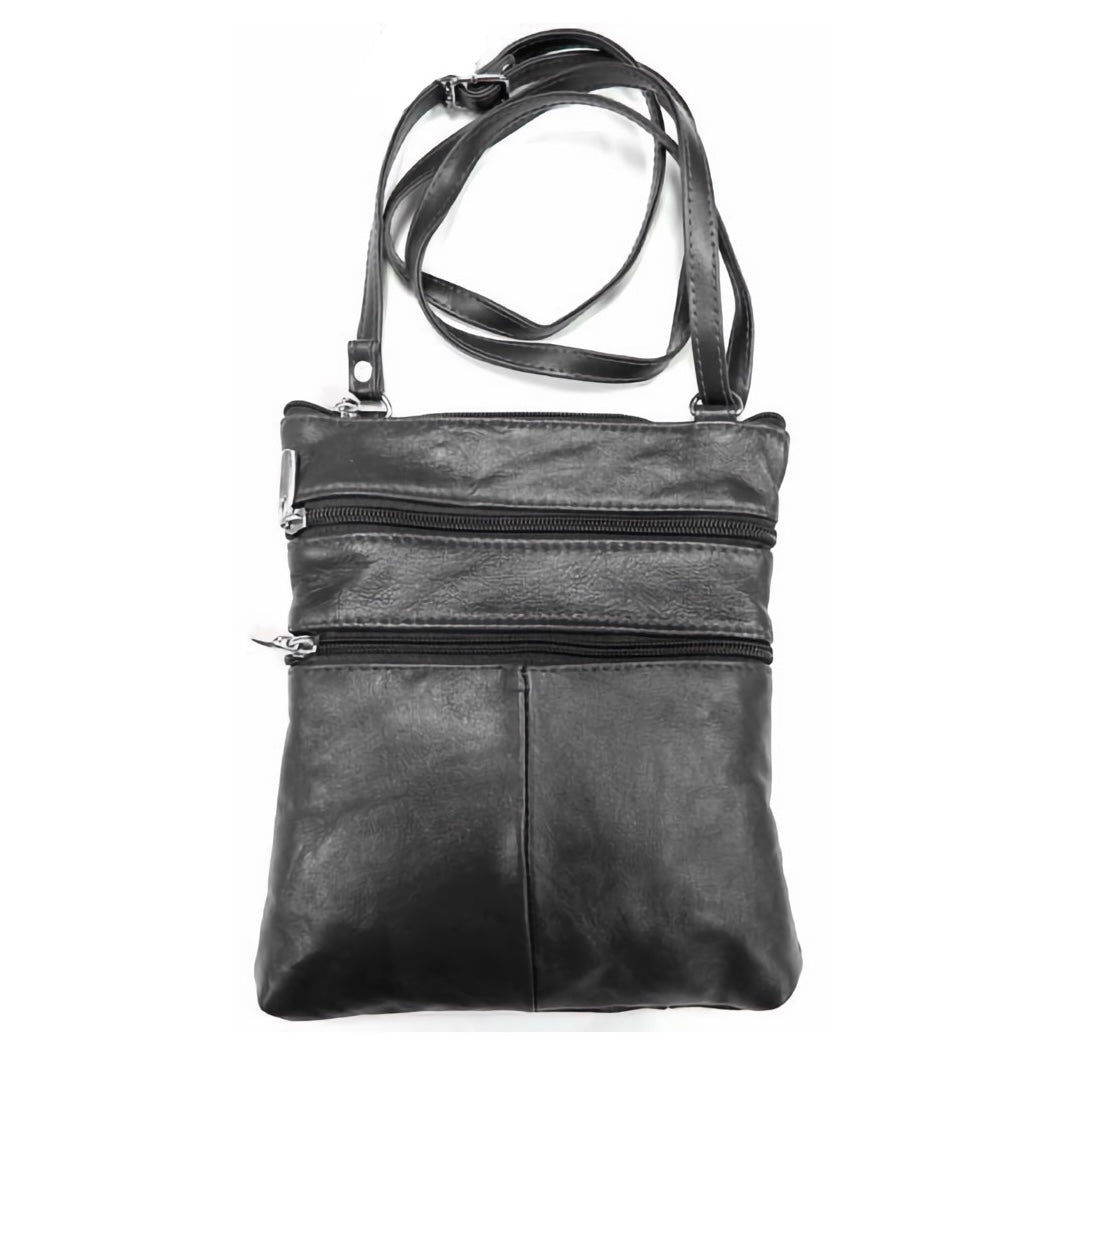 Leather purse black